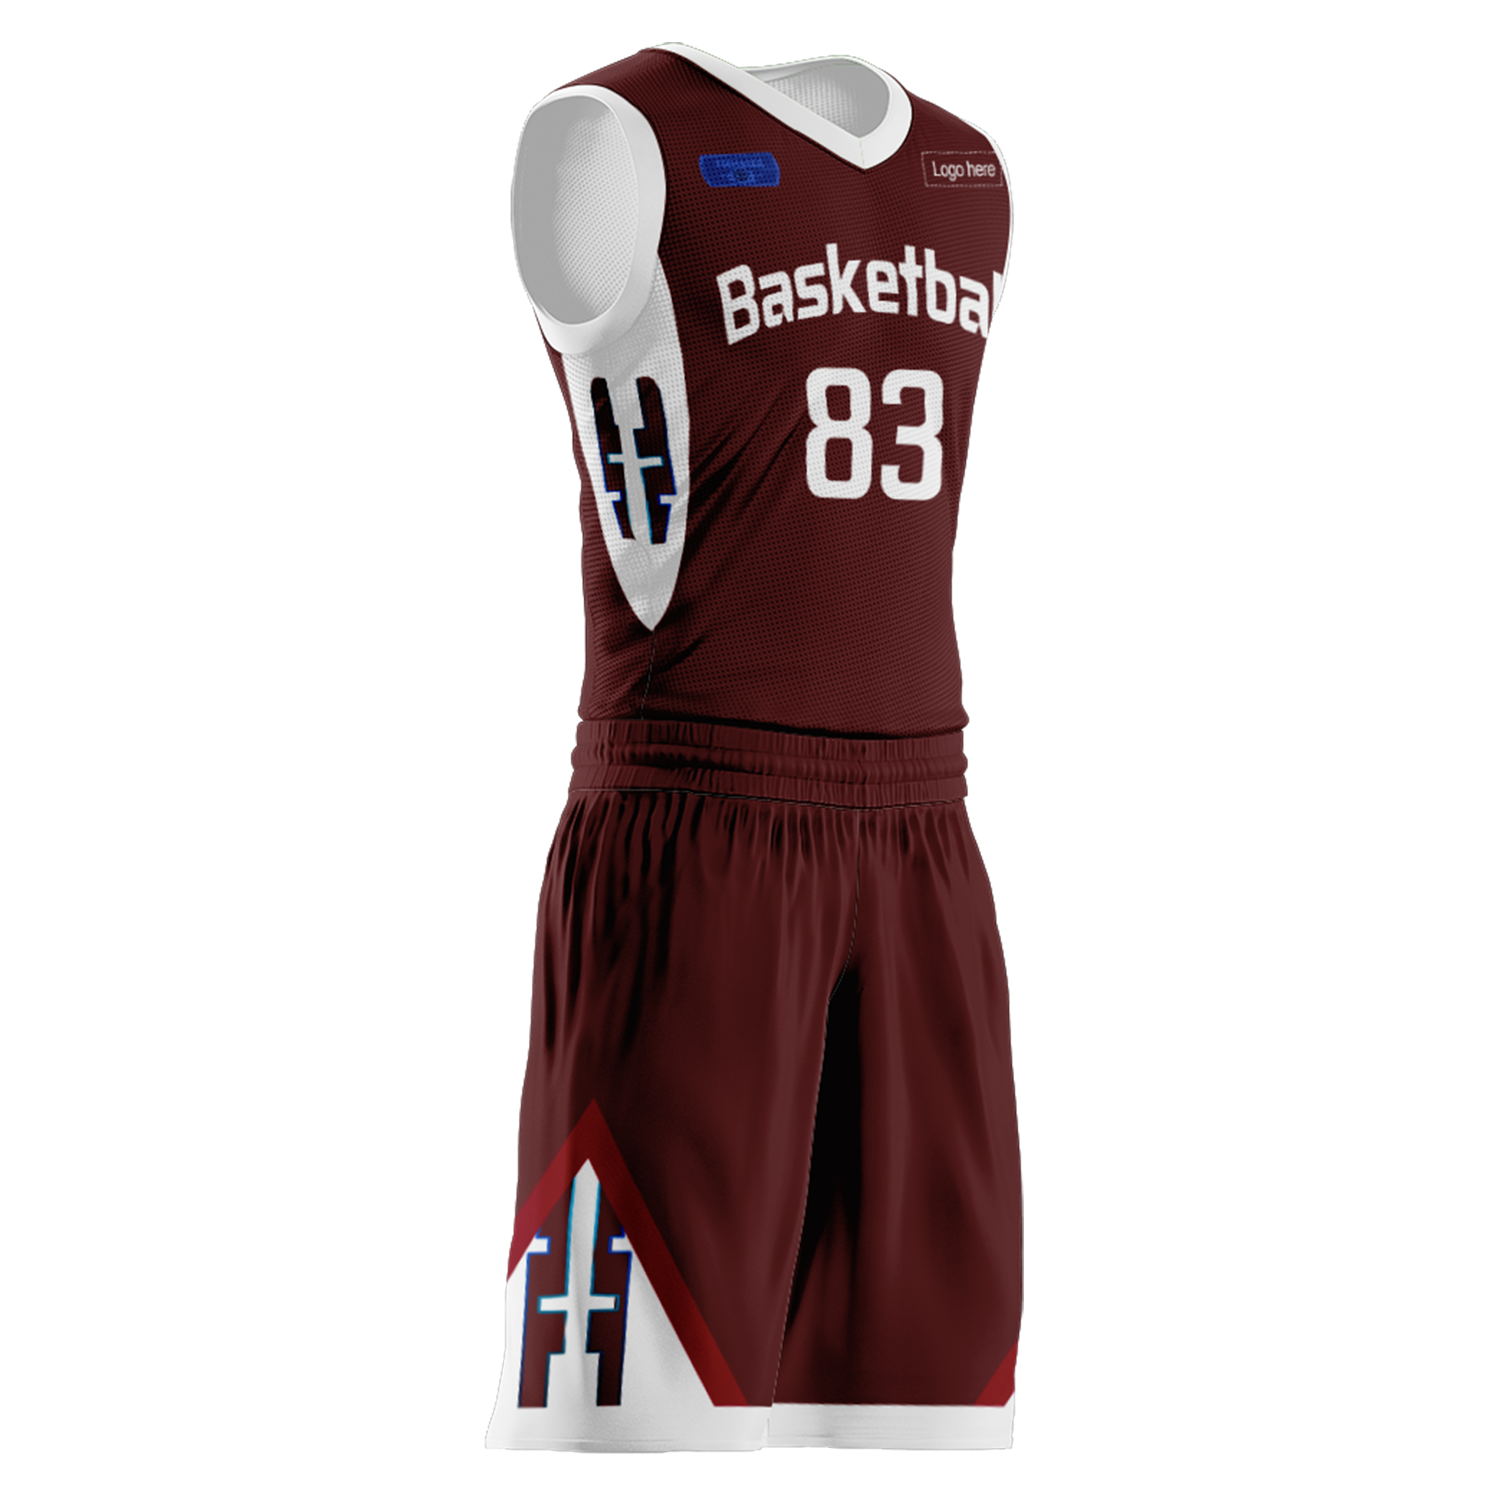 Trajes de baloncesto del equipo de Qatar personalizados